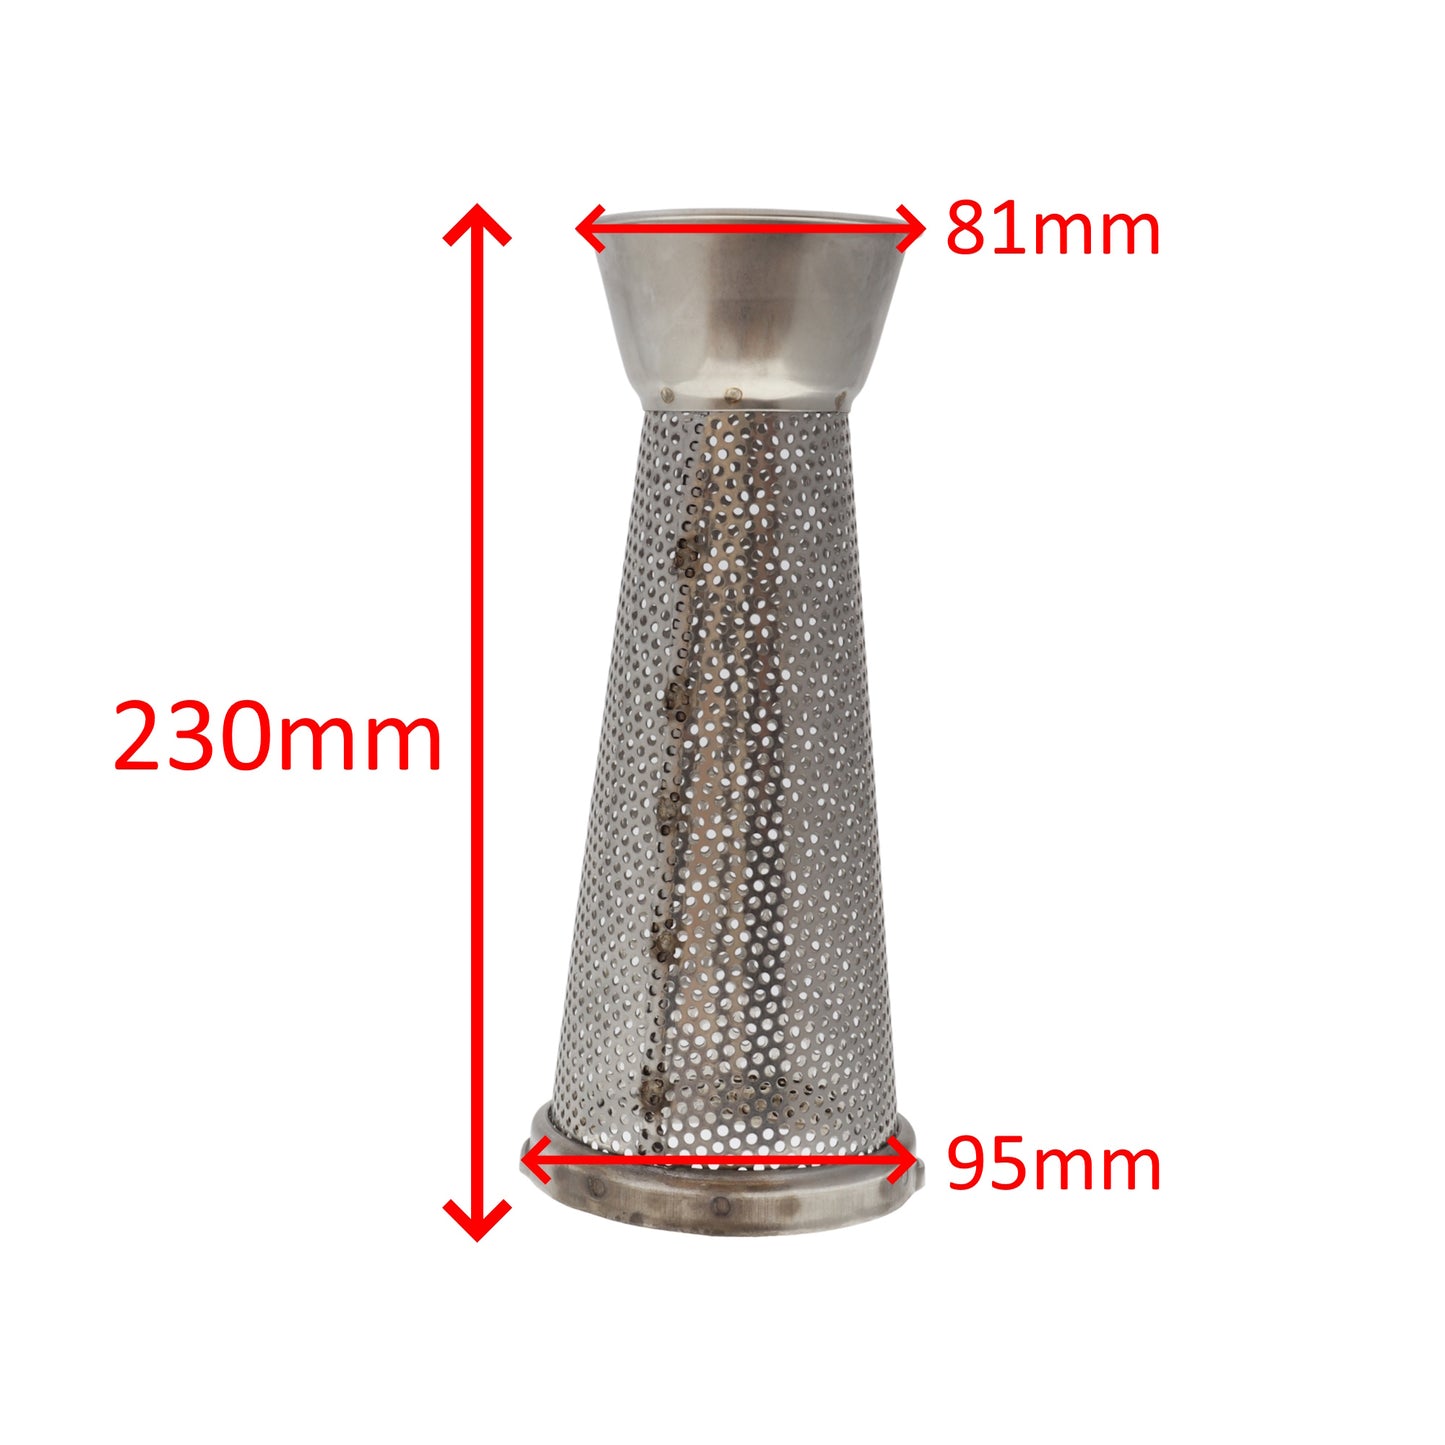 Reber cono filtro inox n. 5 fori grandi 2,5mm passapomodoro spremipomodoro